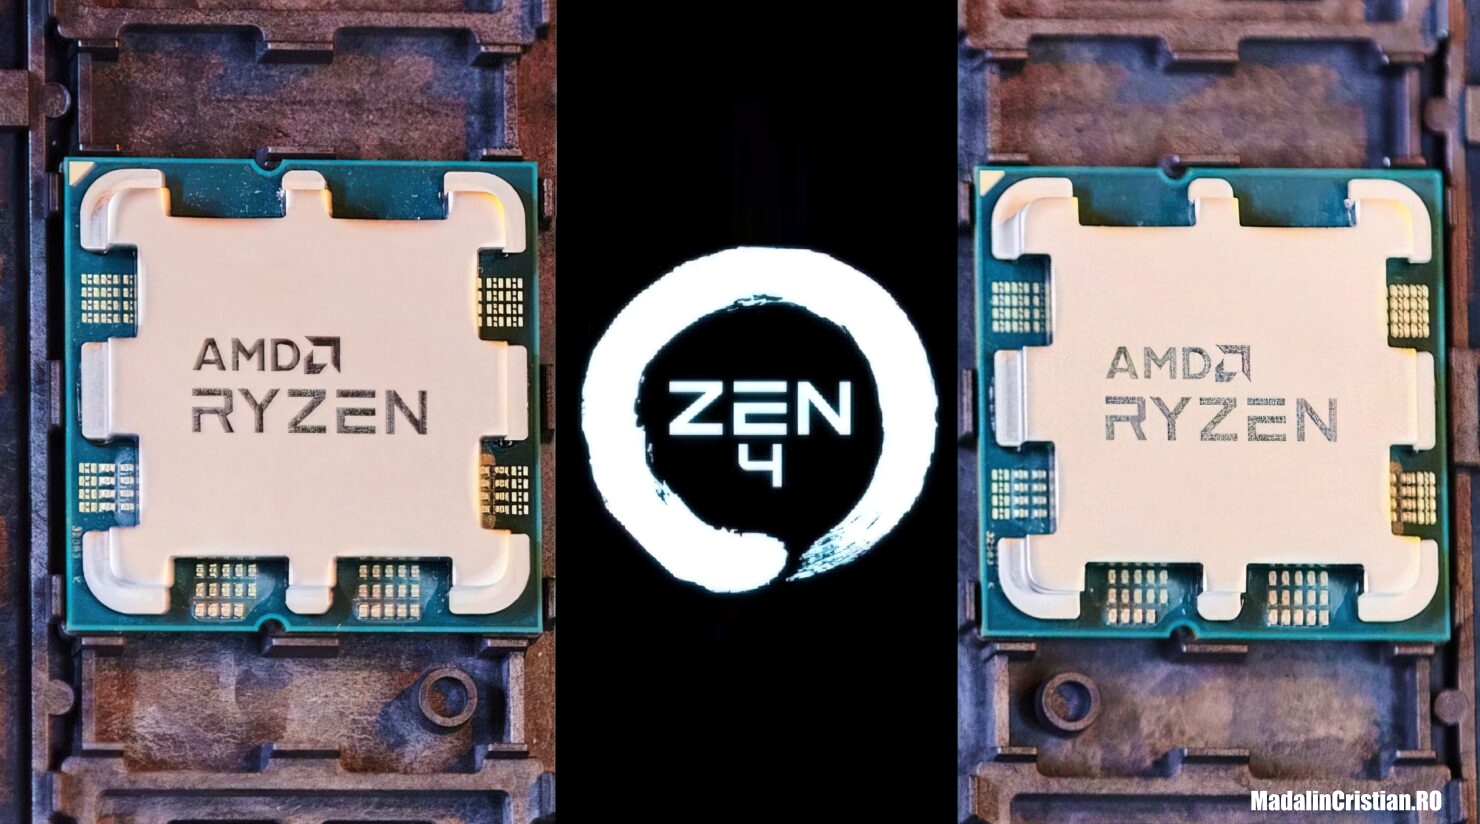 AMD Ryzen 7000 Zen 4 Desktop CPU